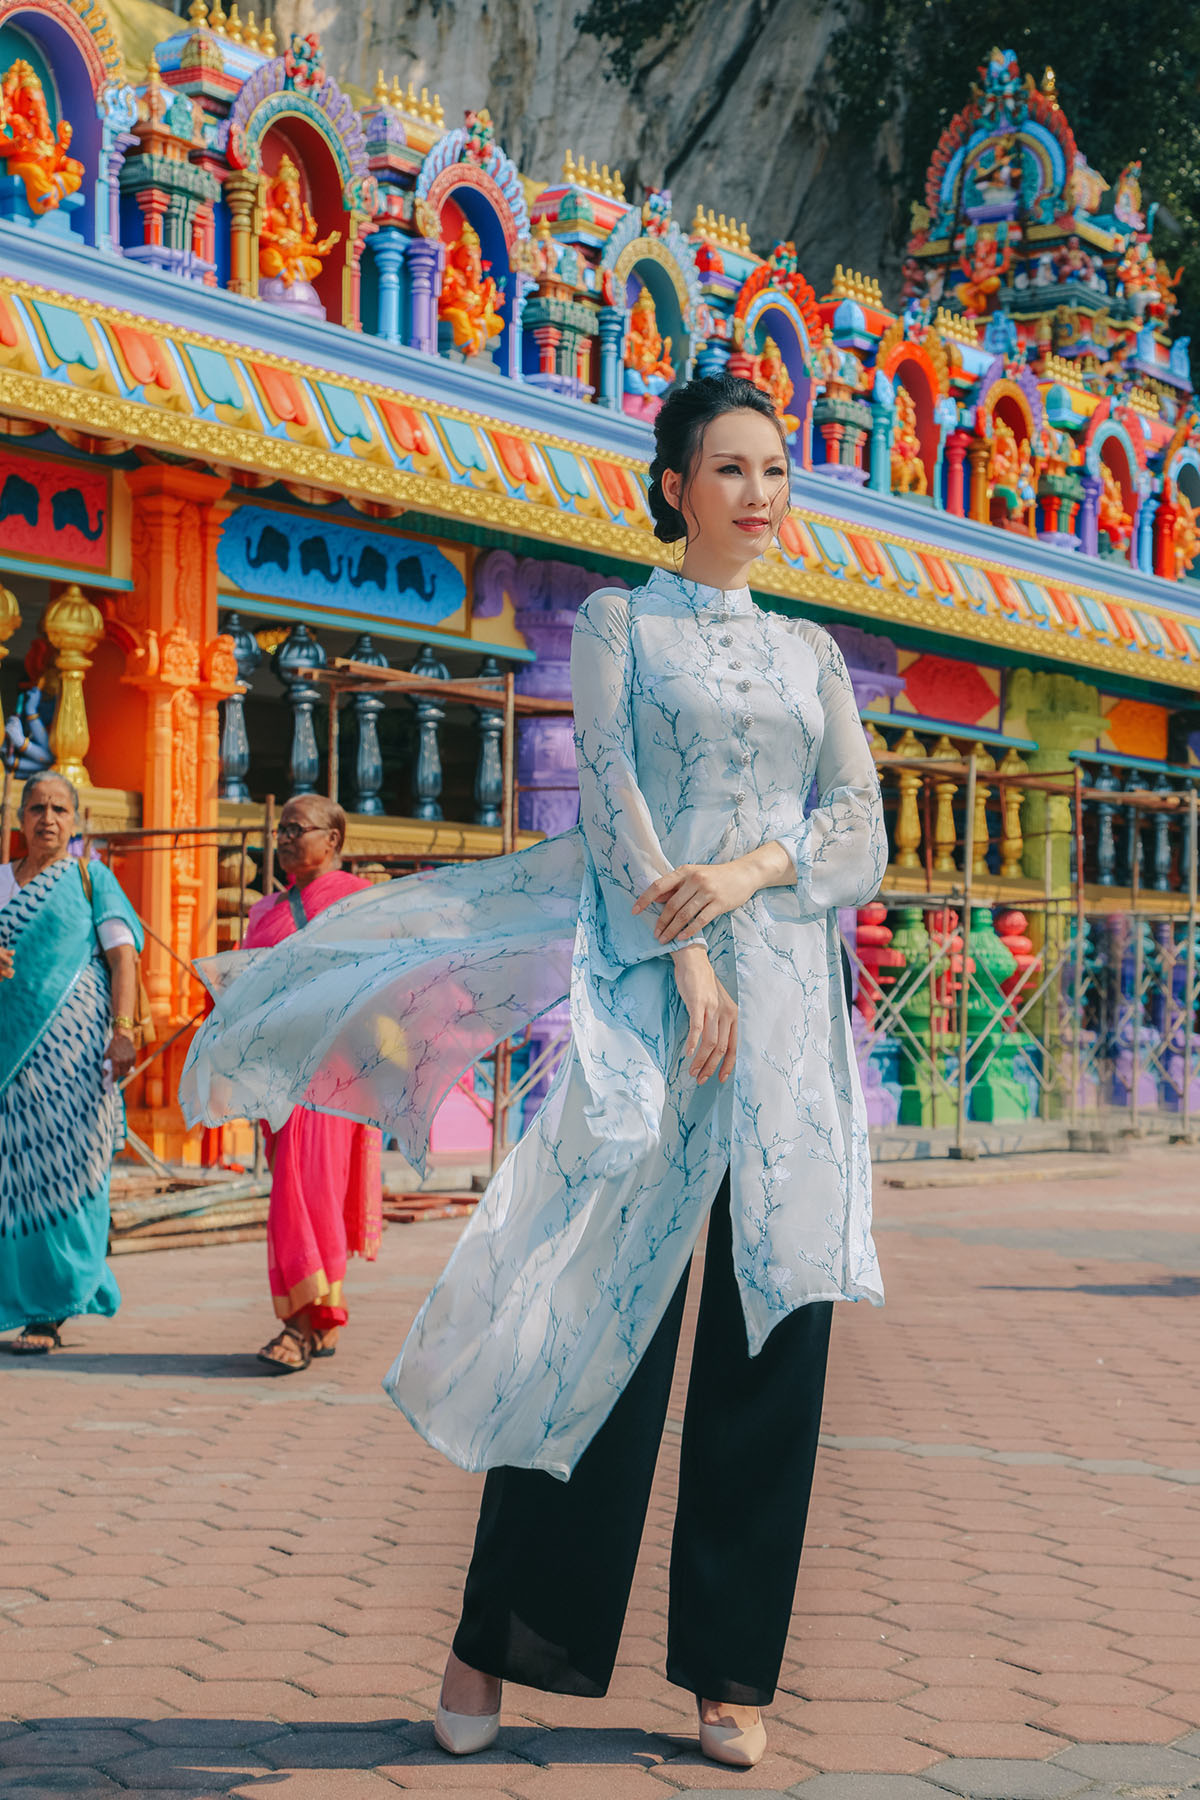 Paris Vũ diện áo dài chụp ảnh ở ngôi đền 'cầu được ước thấy' tại Malaysia